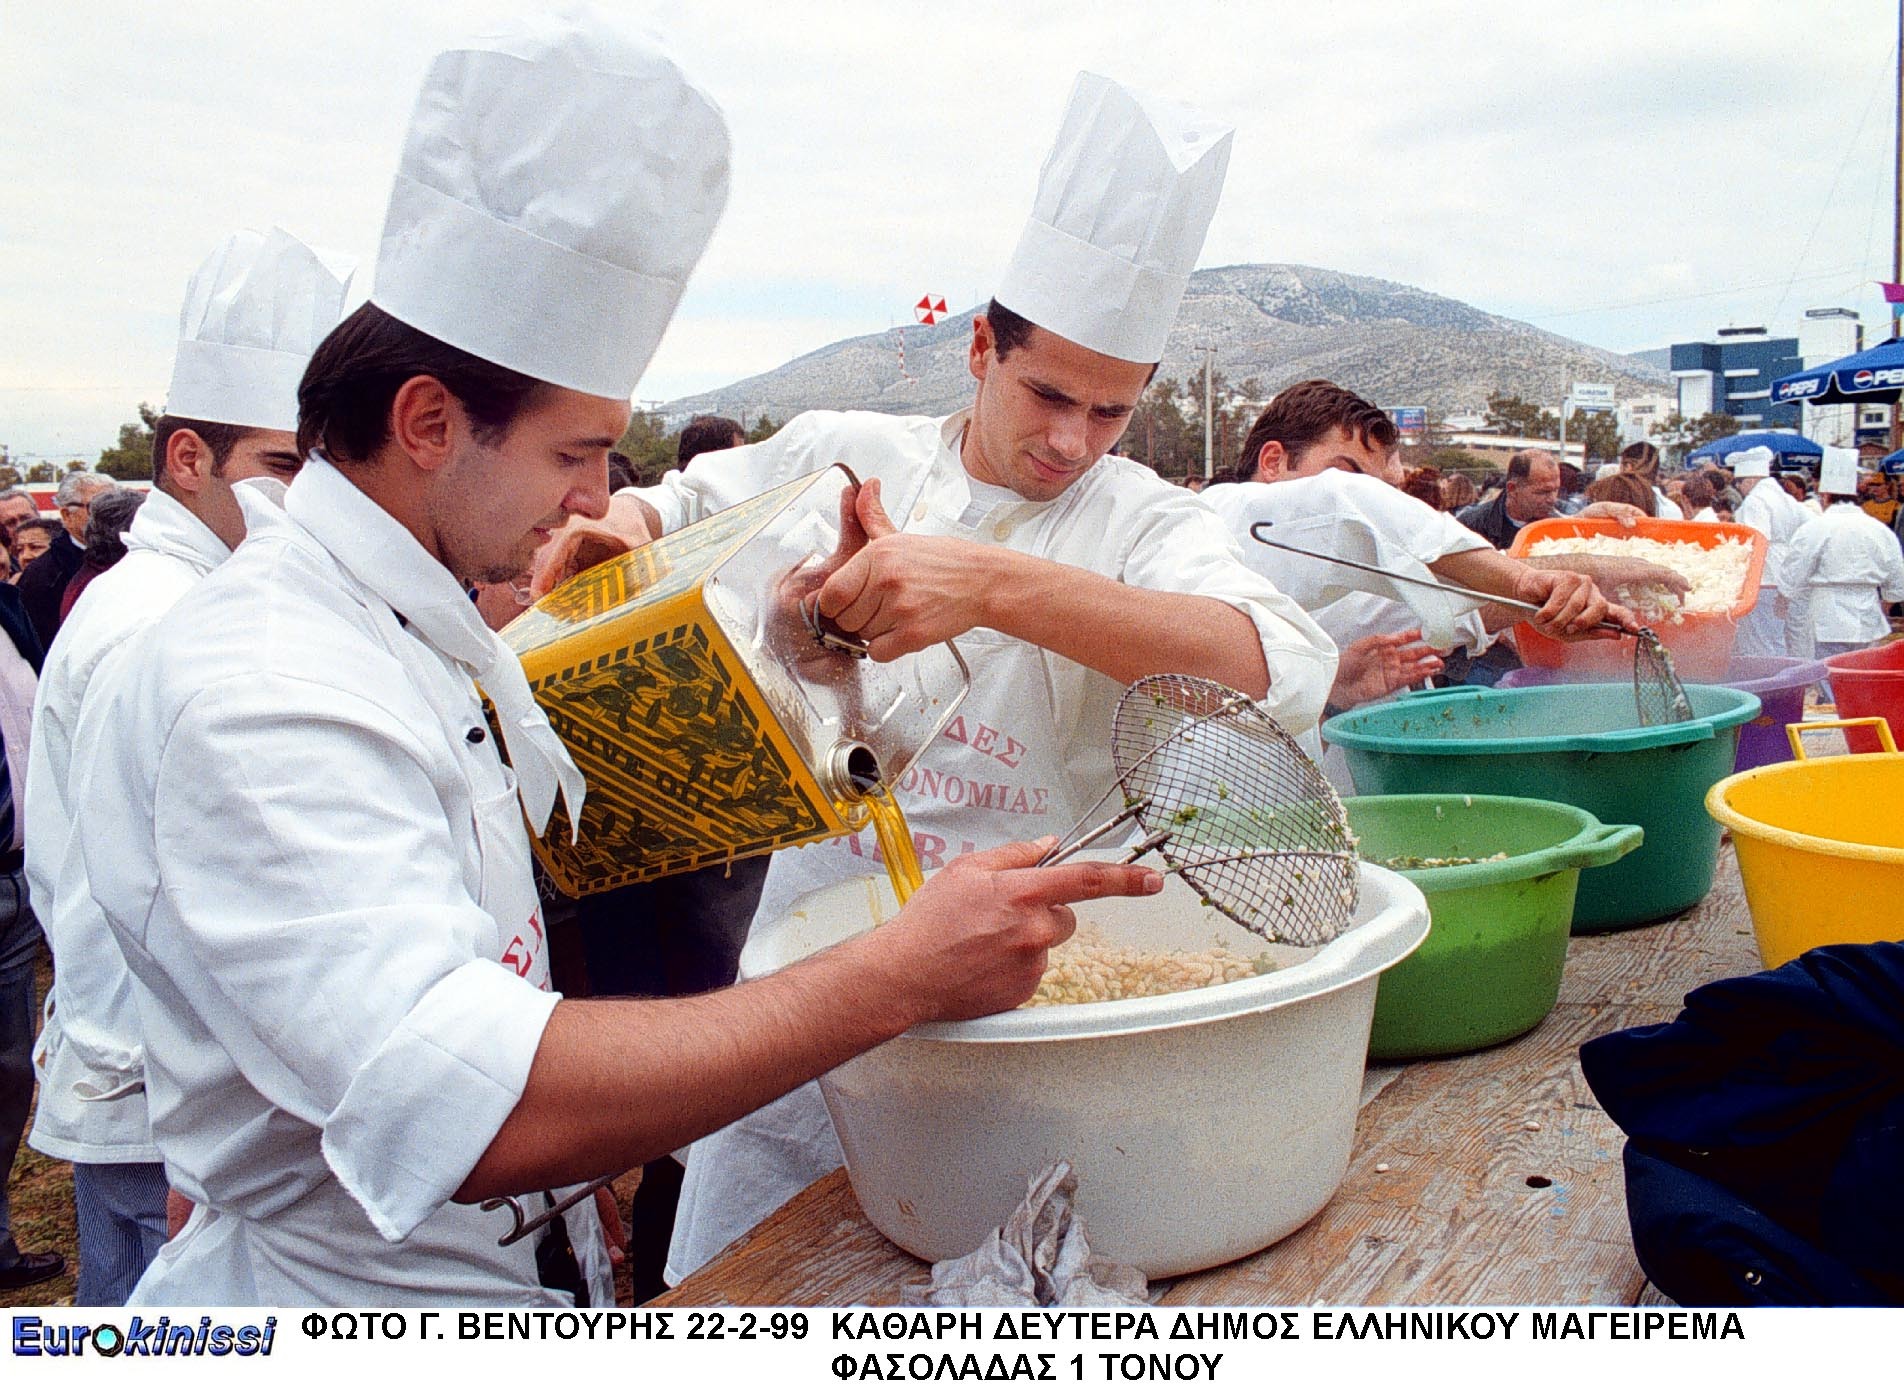 “Σνίτσελ αντί σουβλάκι” – Η Αυστρία ψάχνει έλληνες μάγειρες